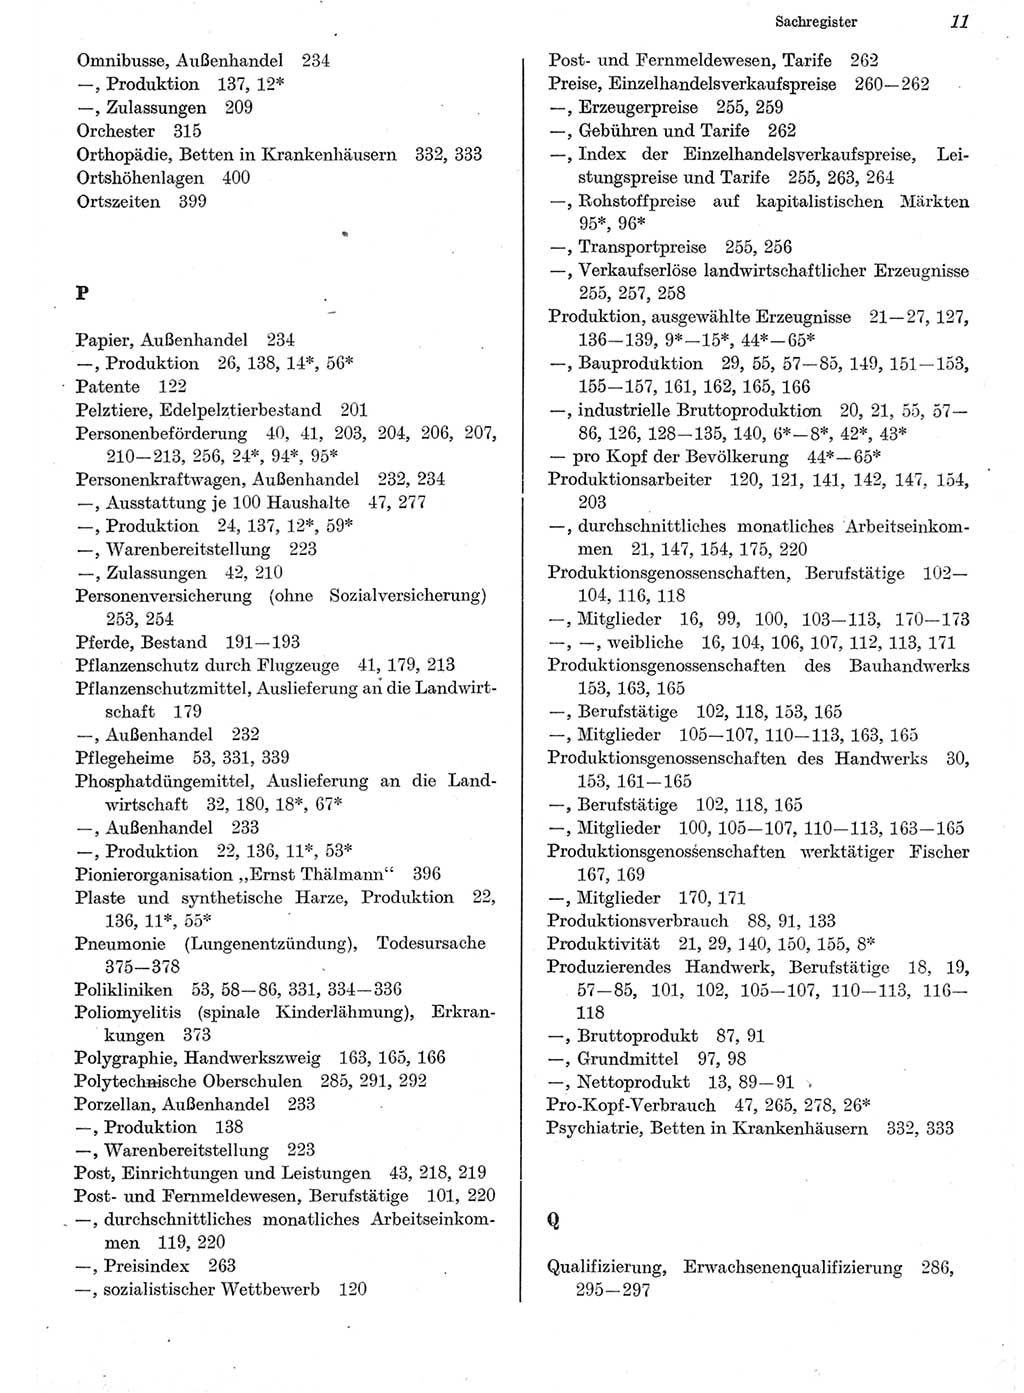 Statistisches Jahrbuch der Deutschen Demokratischen Republik (DDR) 1982, Seite 11 (Stat. Jb. DDR 1982, S. 11)